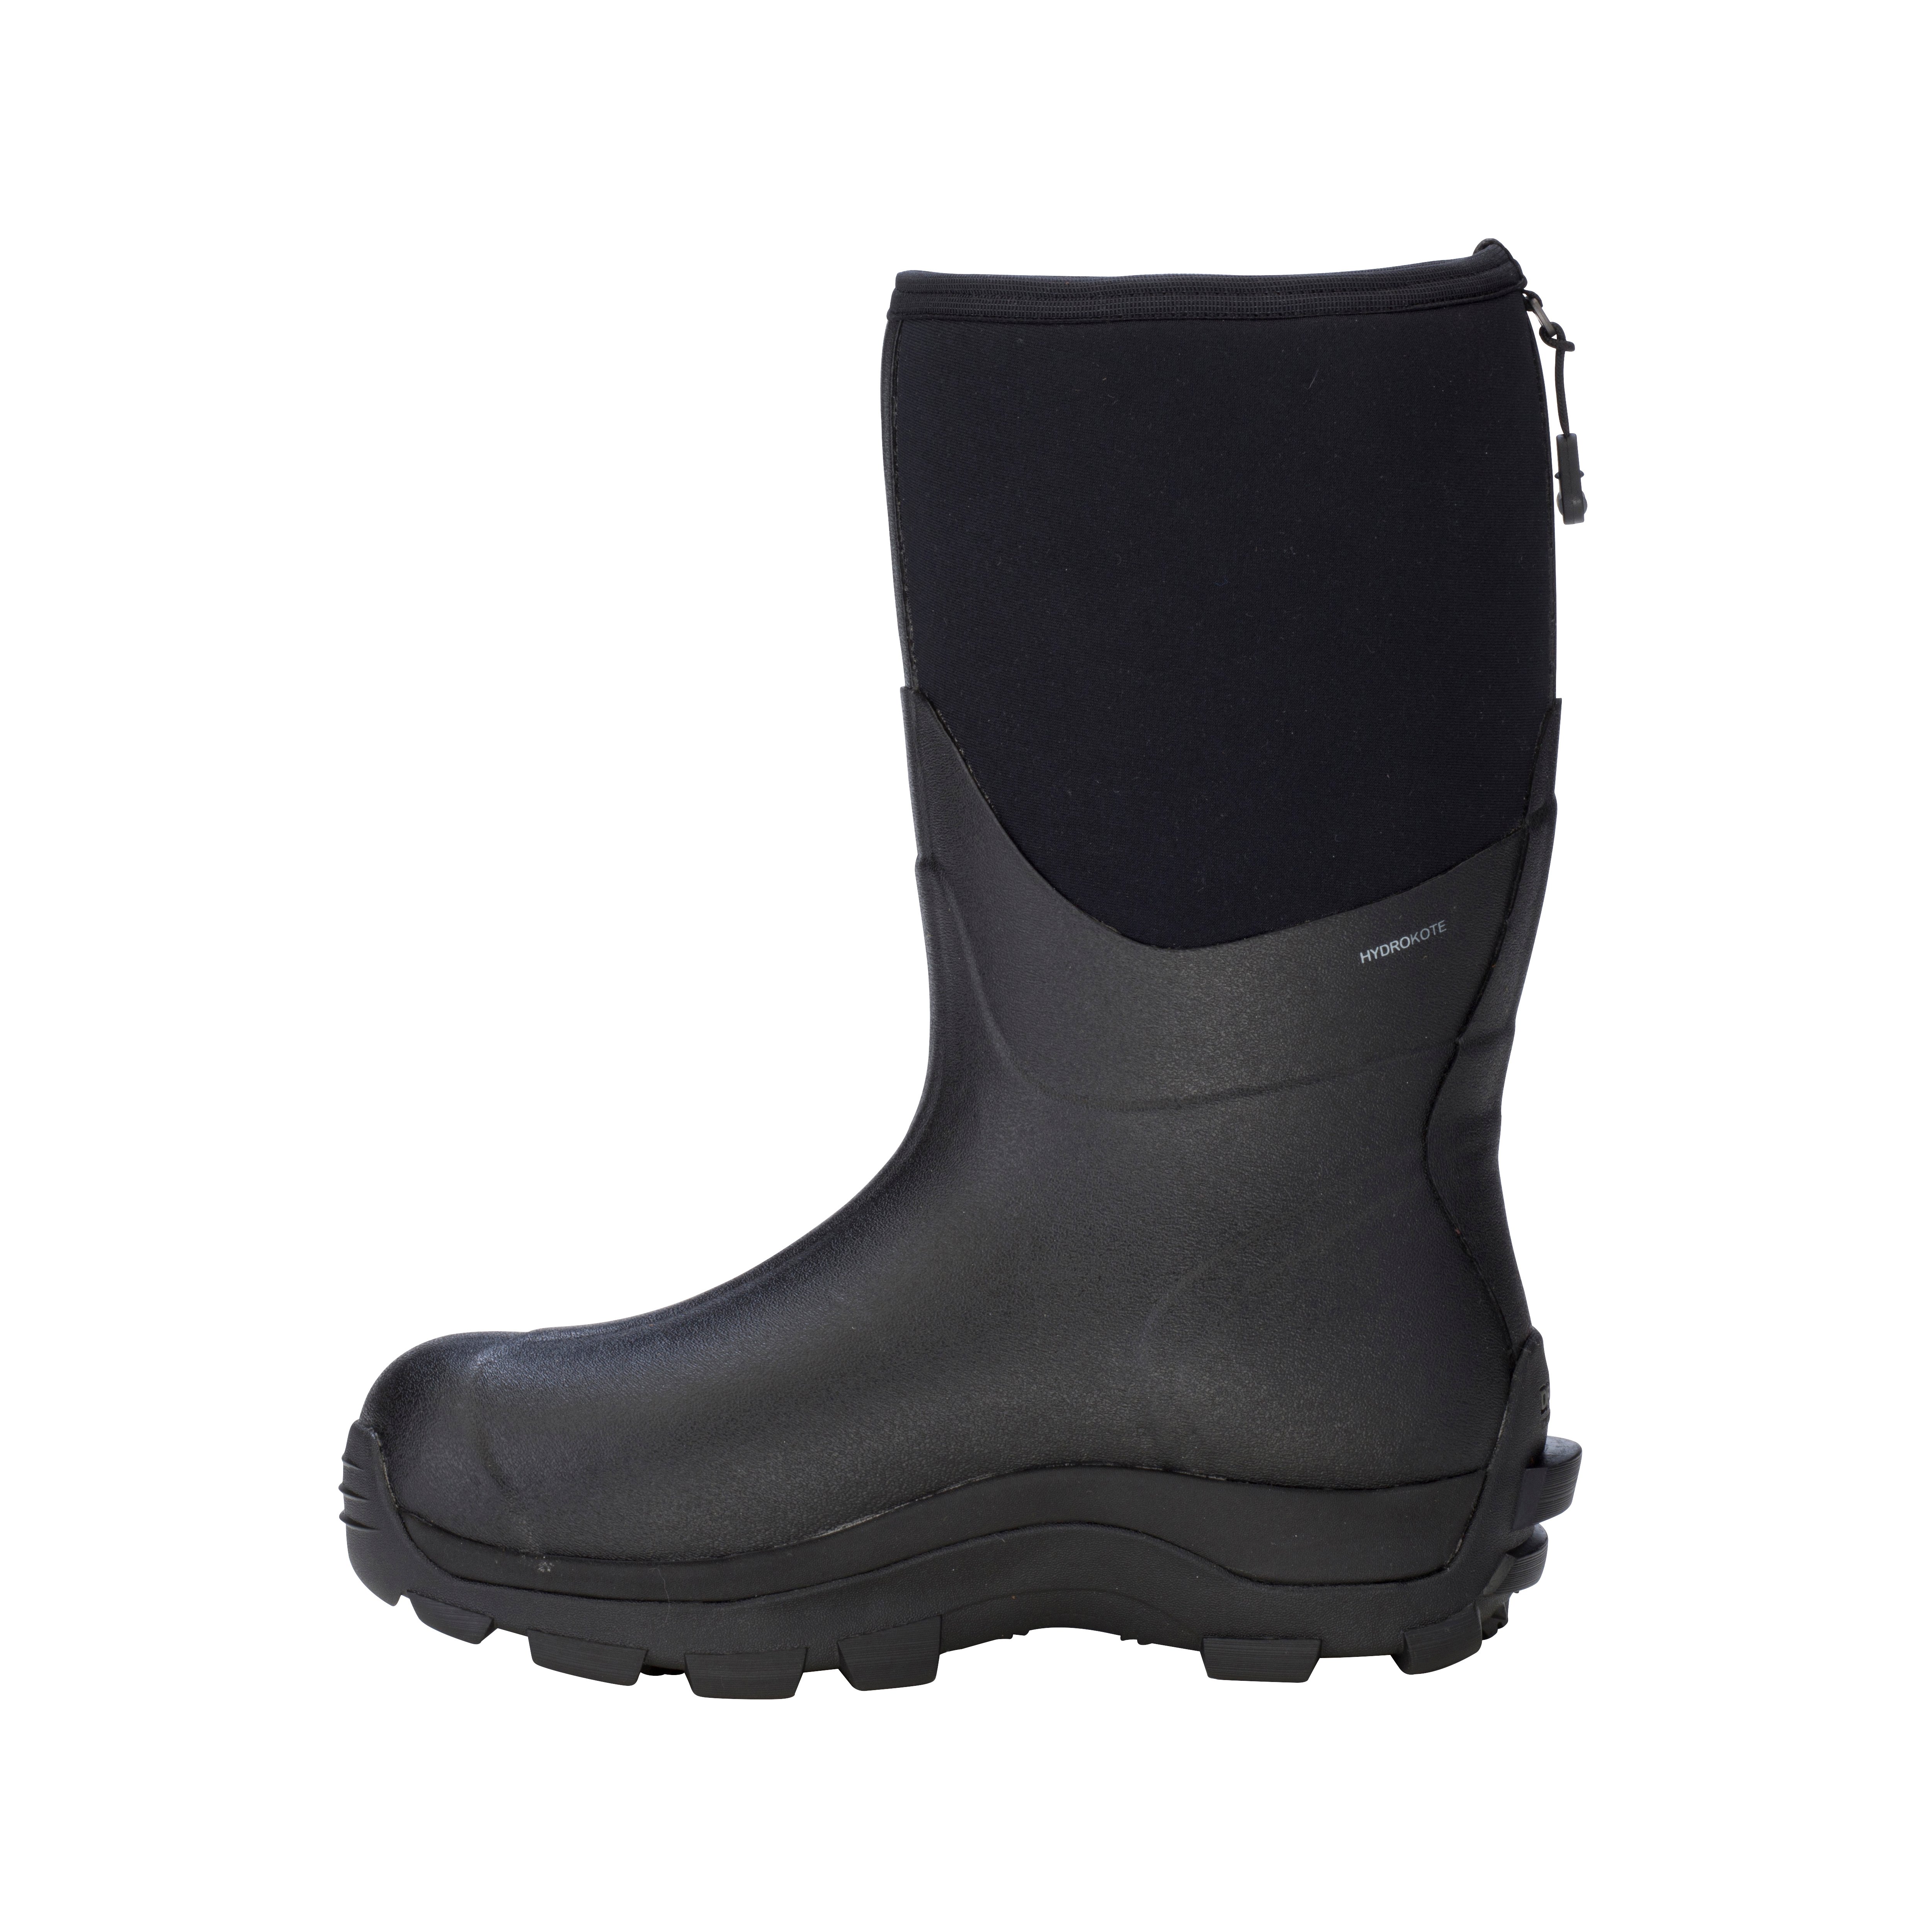 Arctic Storm Men\'s Mid – Waterproof Boots Dryshod